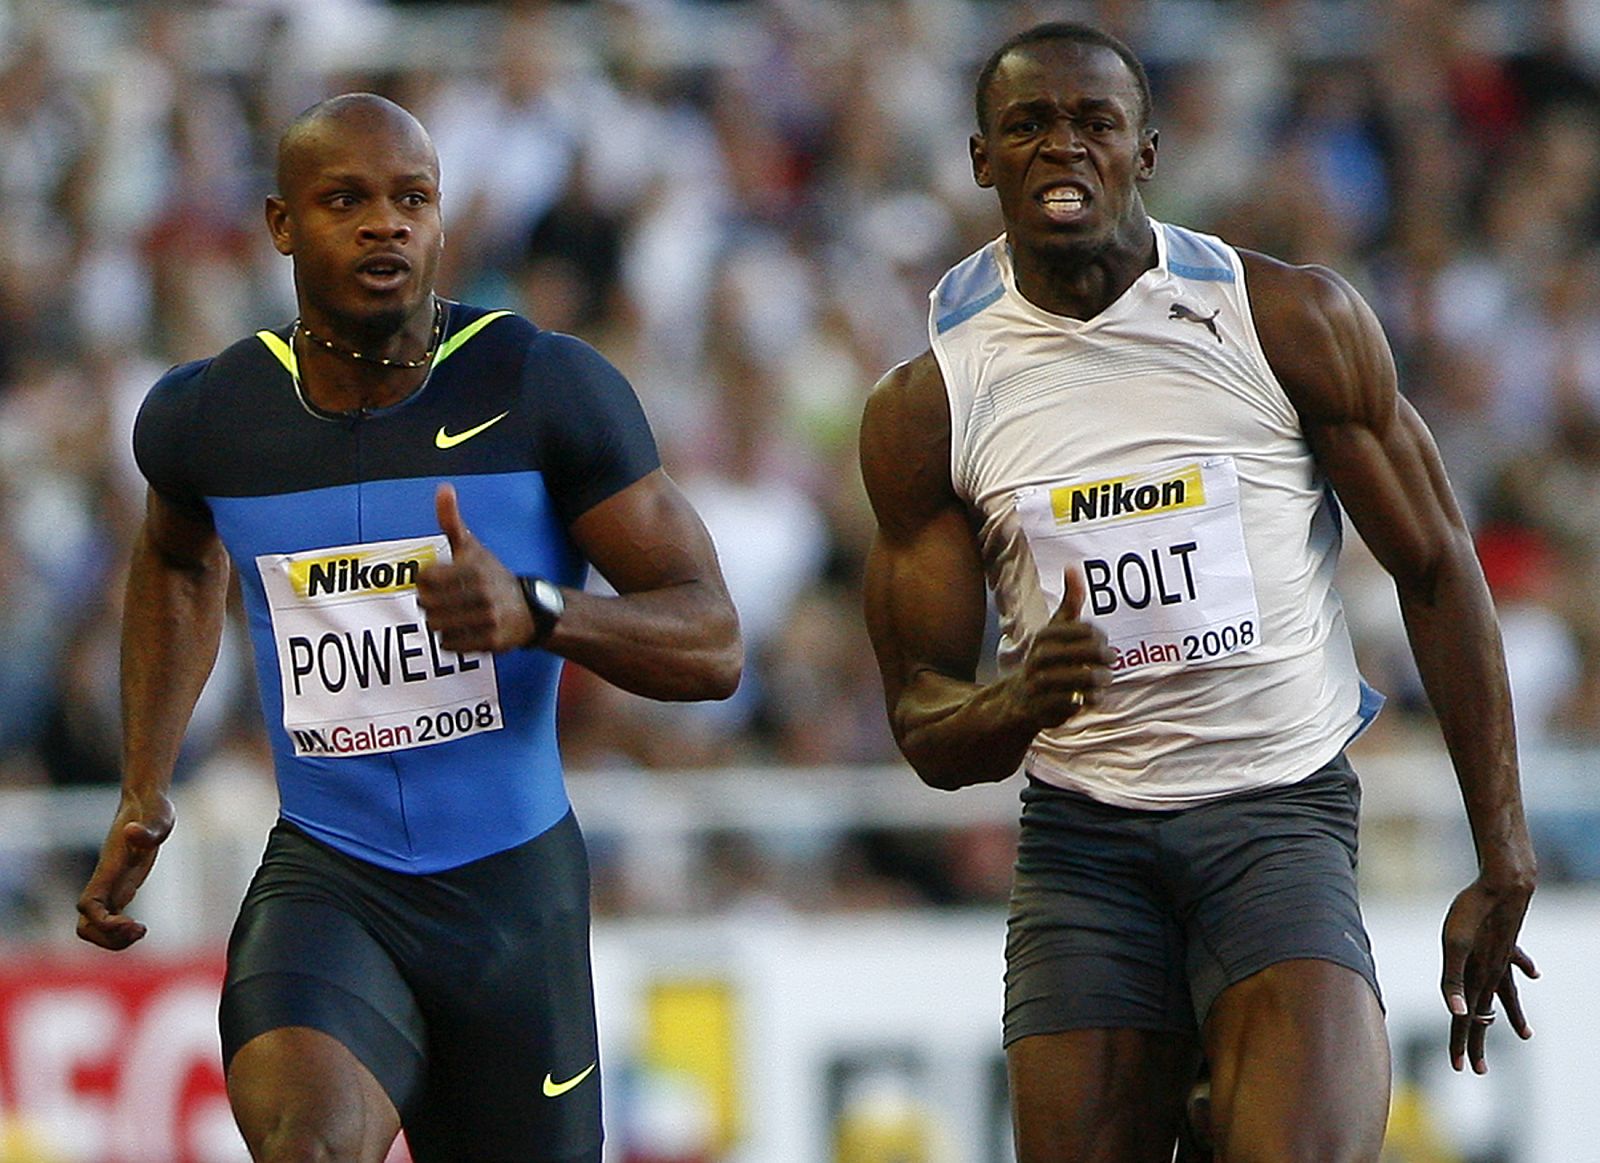 Los jamaicanos Powell y Bolt correrán los 100 metros lisos en los Juegos de Pekín.